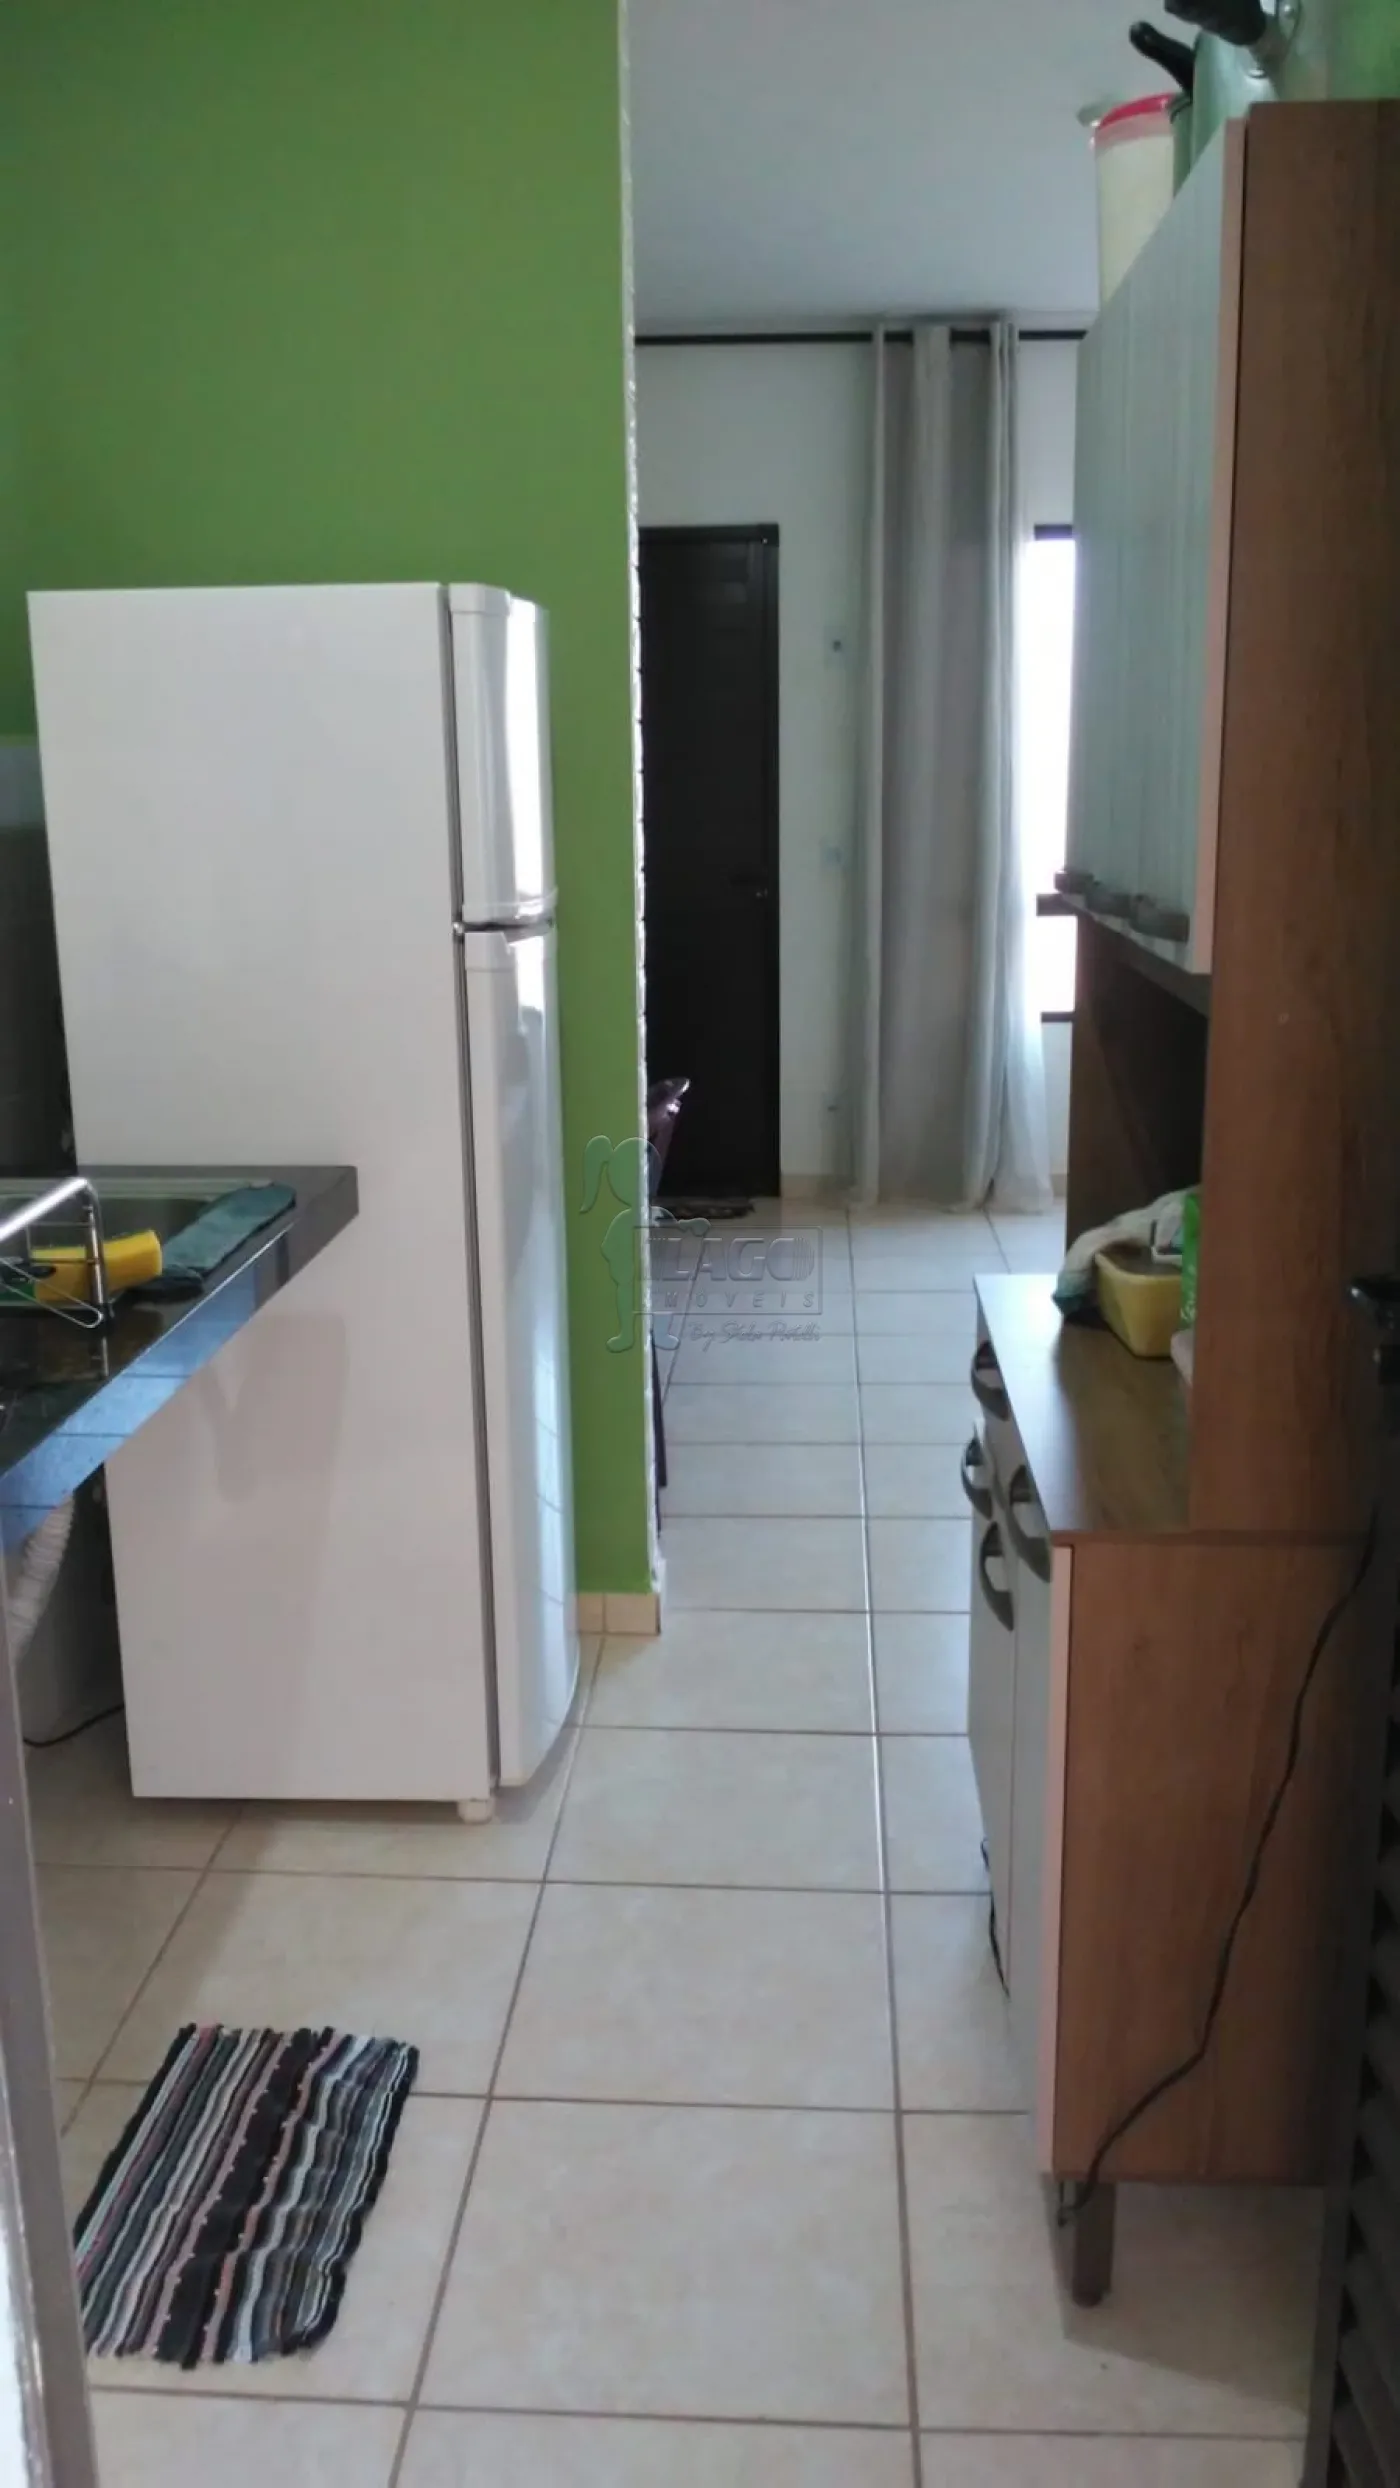 Comprar Casa condomínio / Padrão em Sertãozinho R$ 212.000,00 - Foto 2